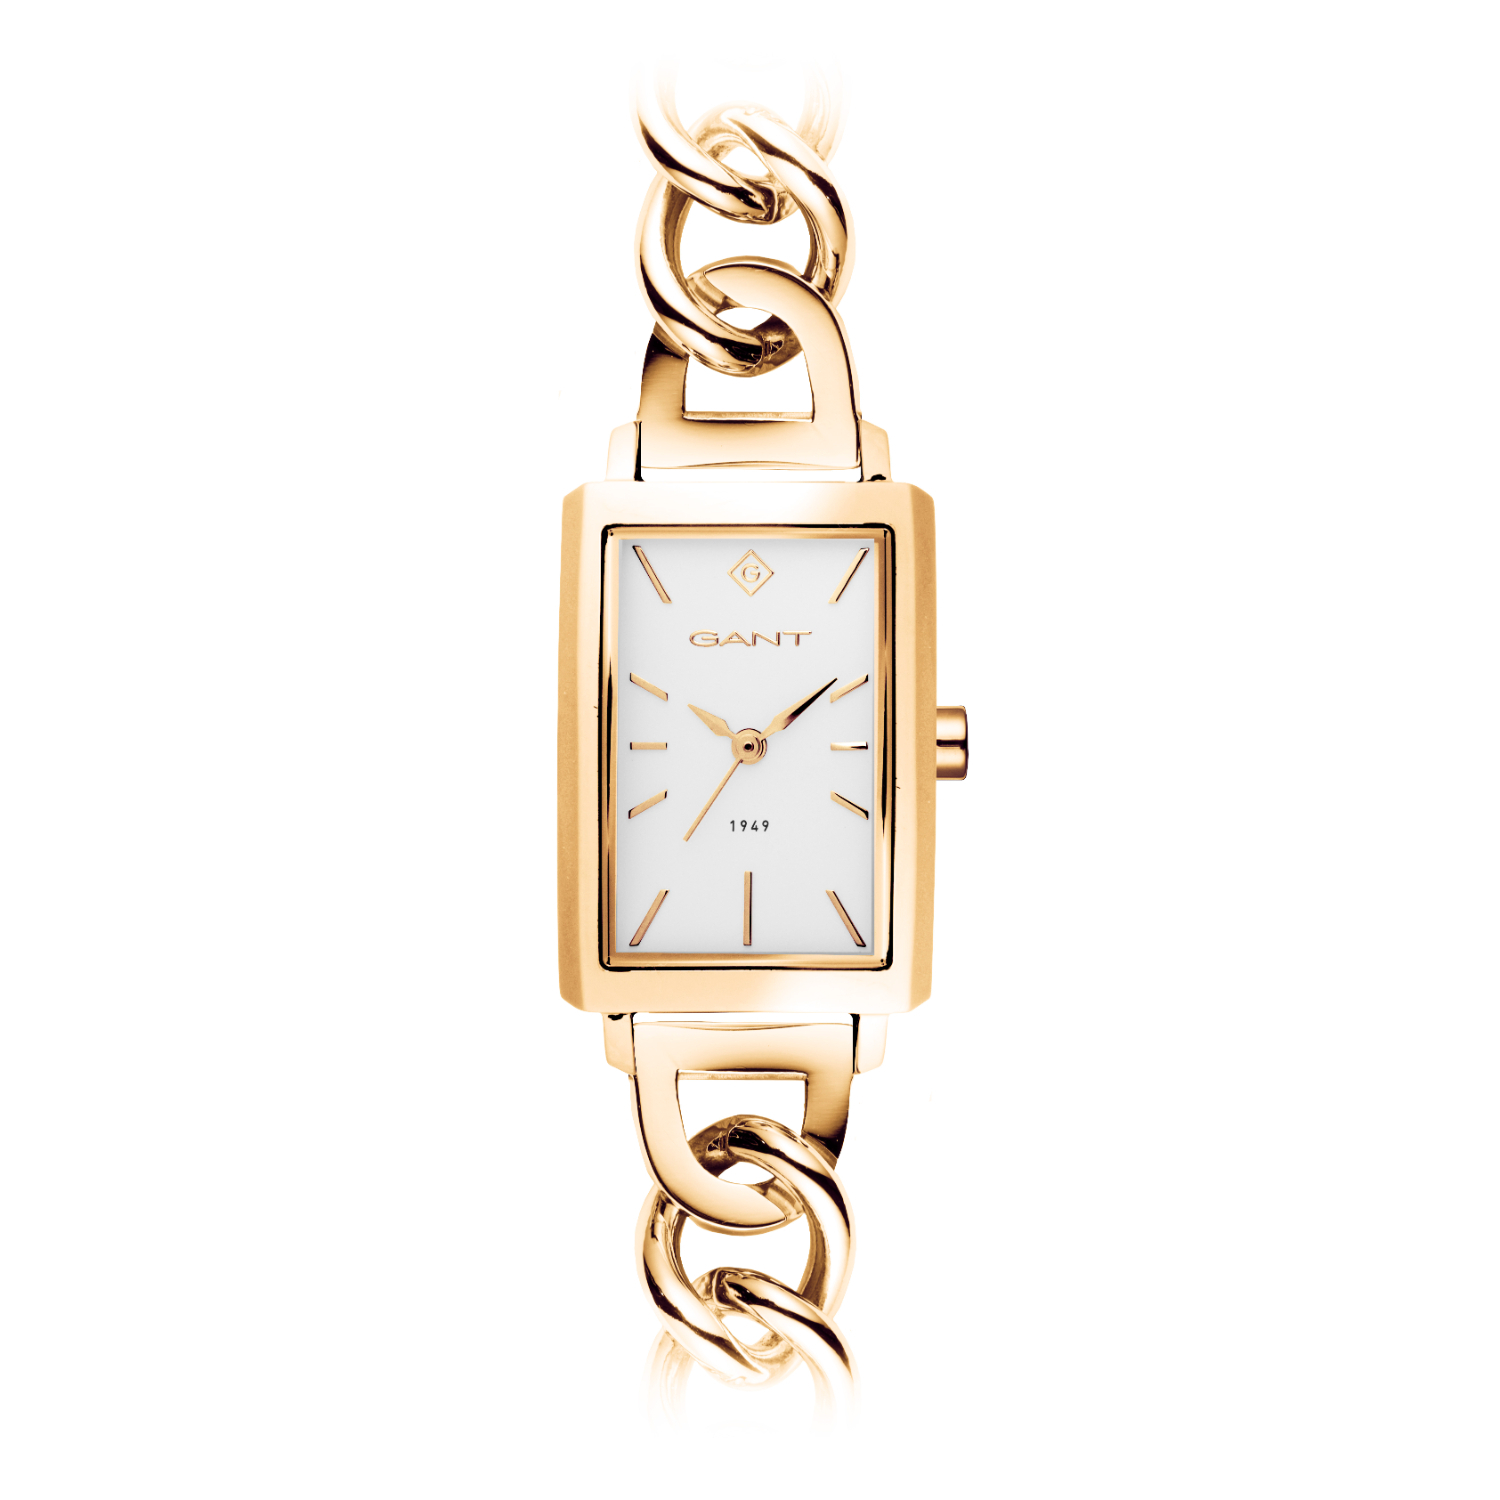 Γυναικείο ρολόι Gant από χρυσό ανοξείδωτο ατσάλι με λευκό καντράν και μπρασελέ.